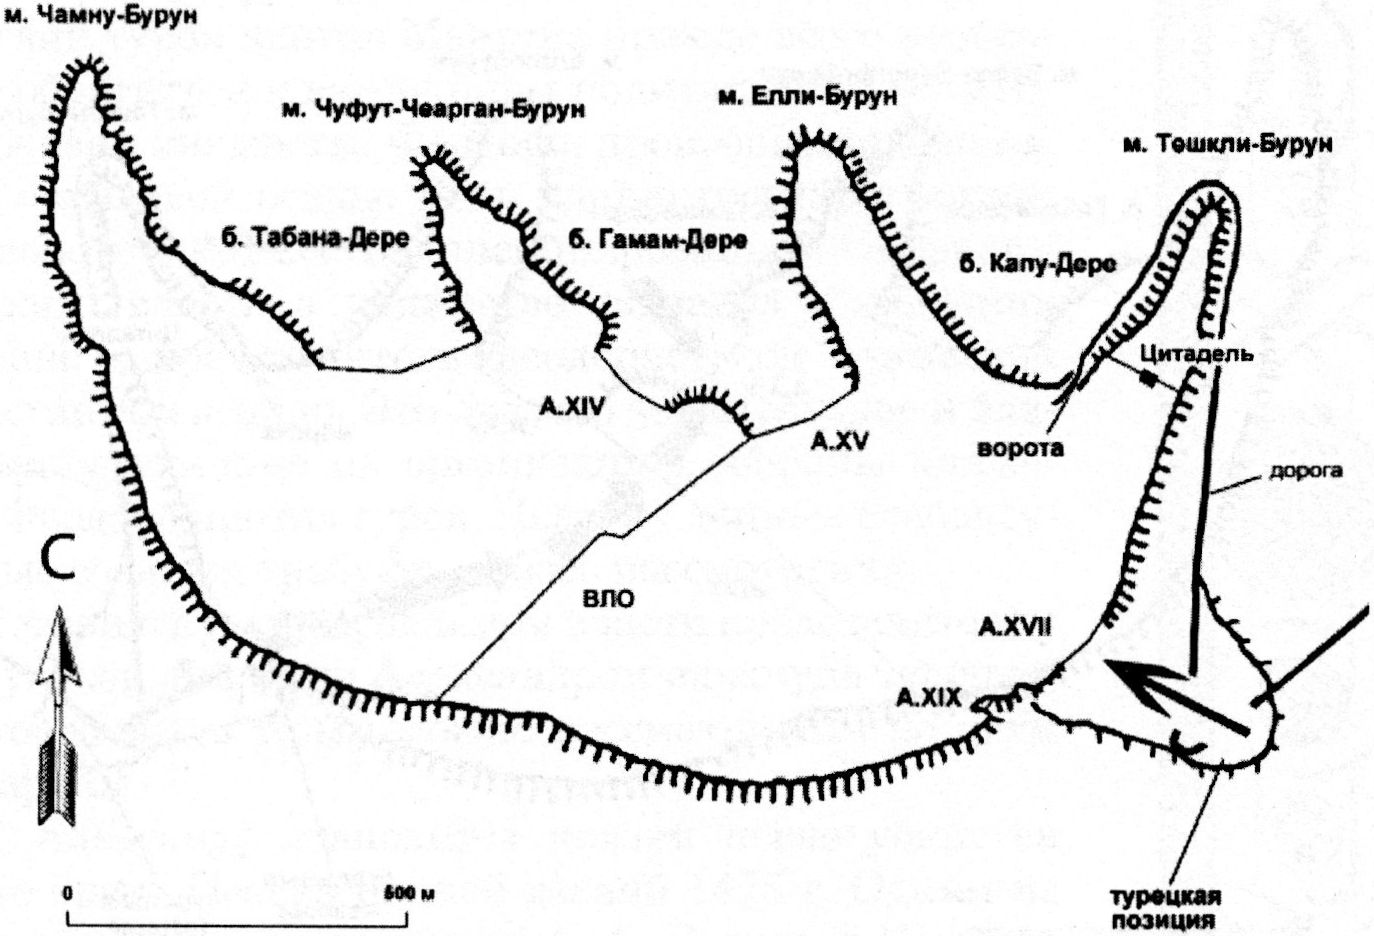 Первый этап захвата Мангупа в 1475 г. Начальные штурмовые действия османов без артиллерийской поддержки